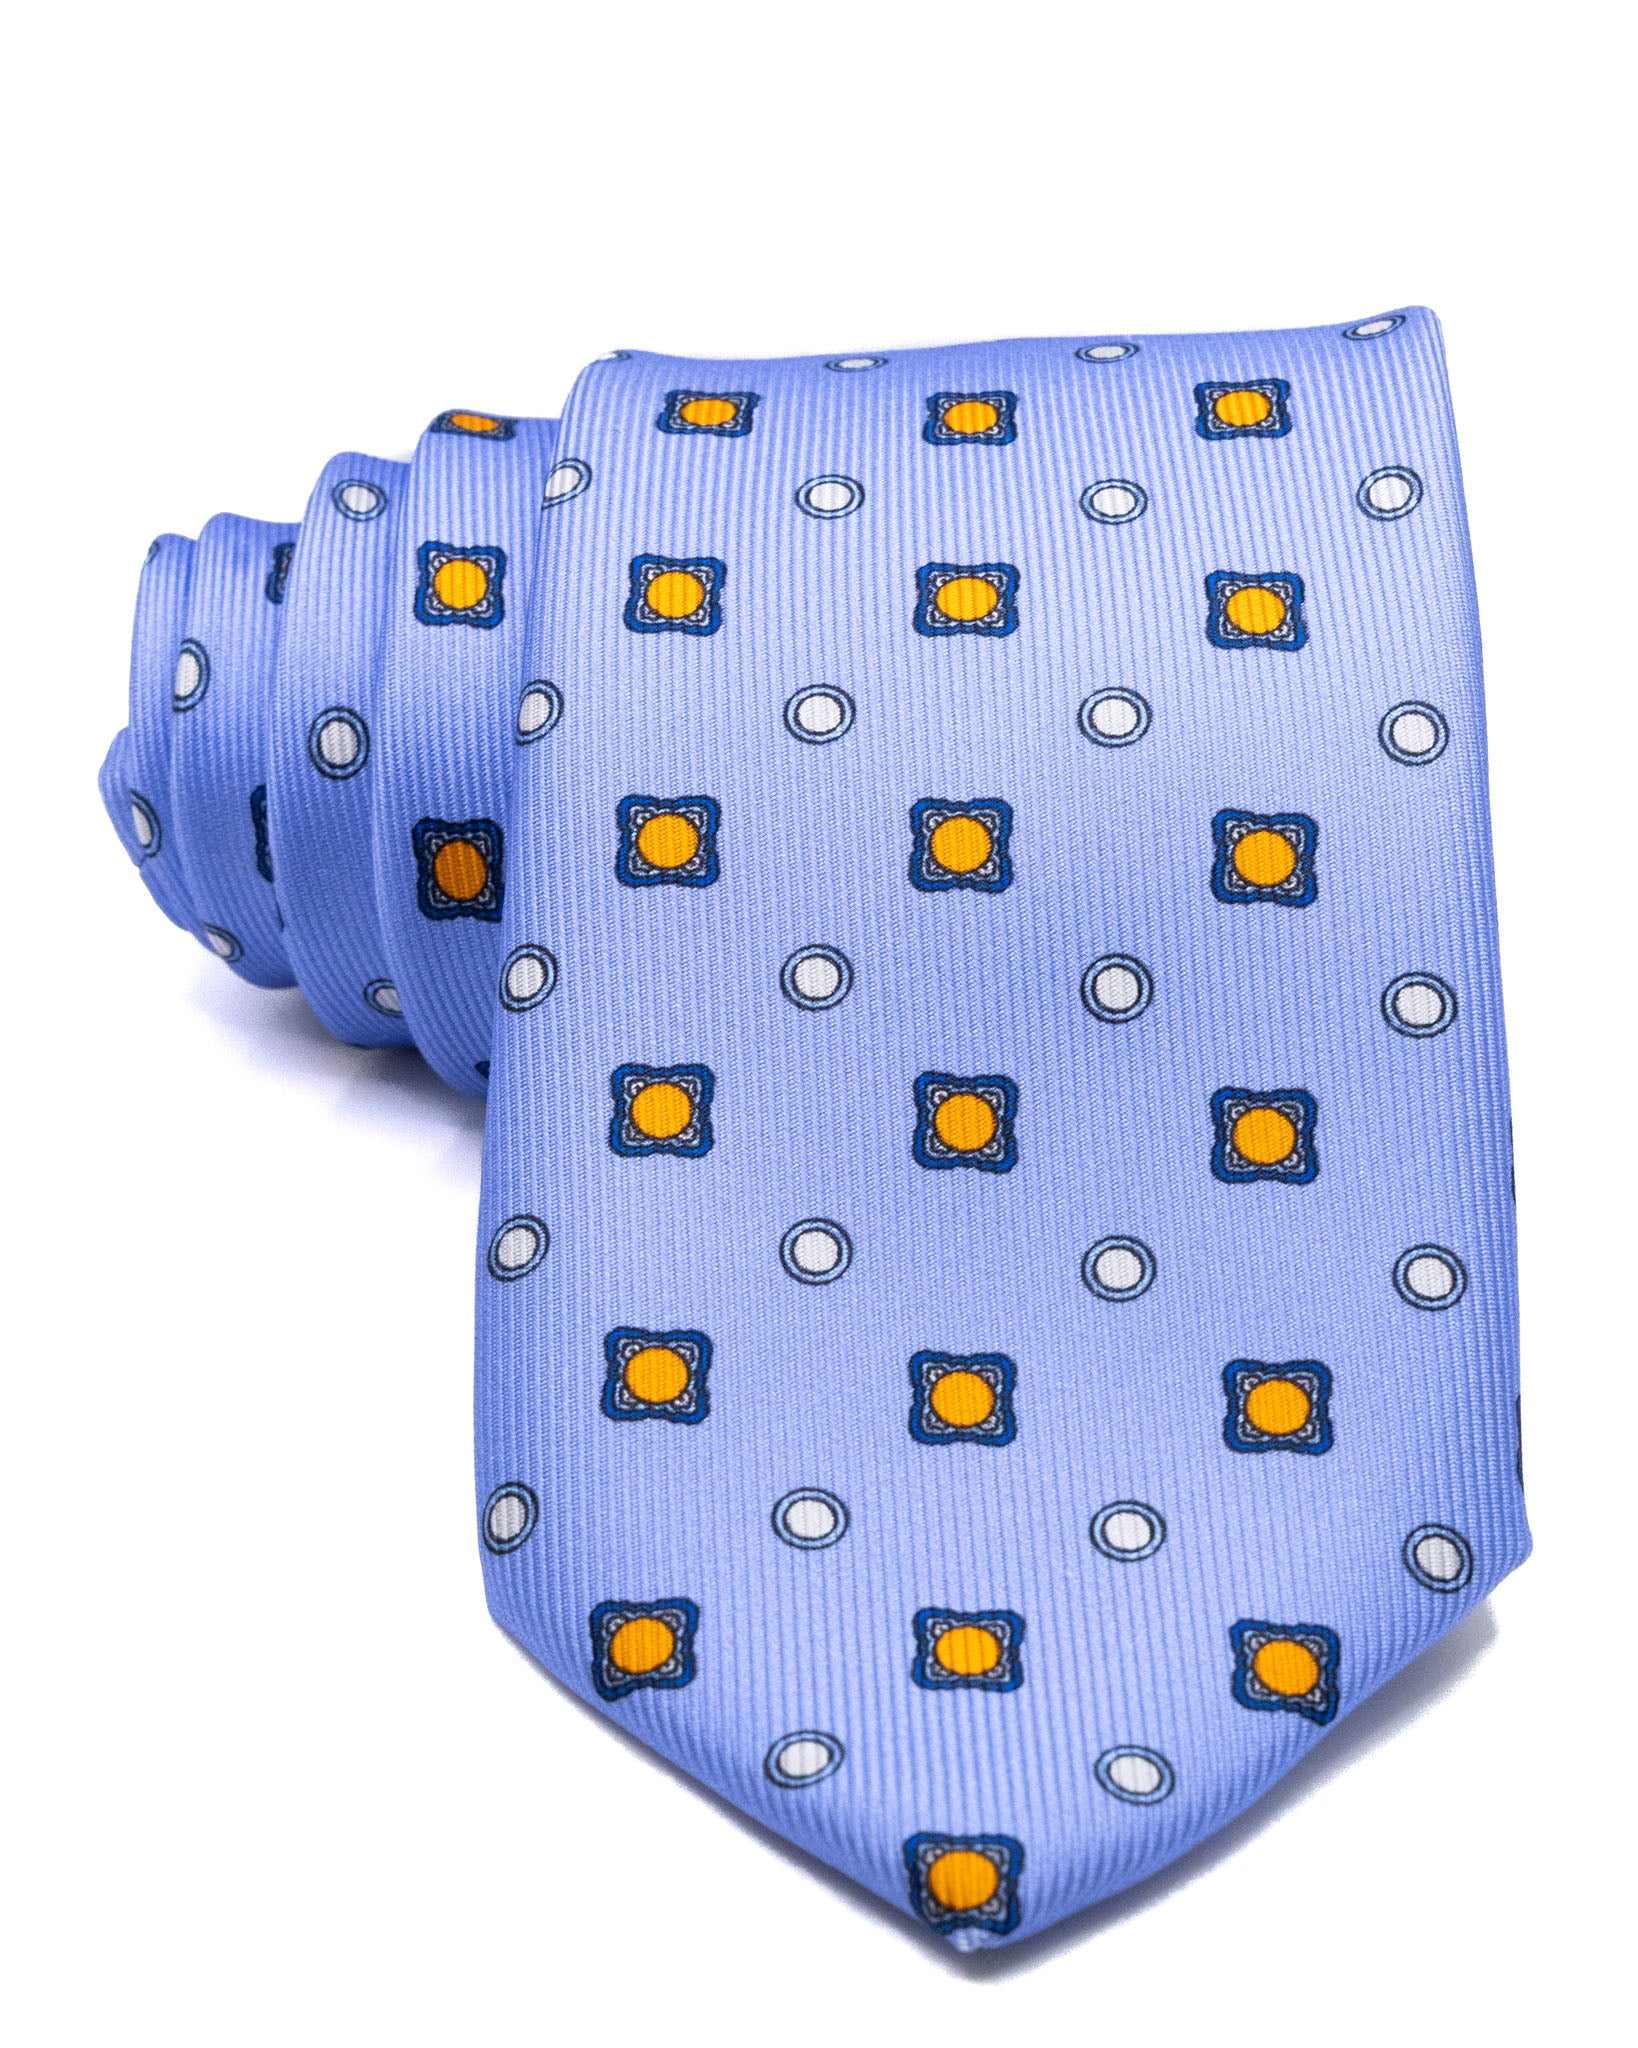 Tie - in blue woven silk